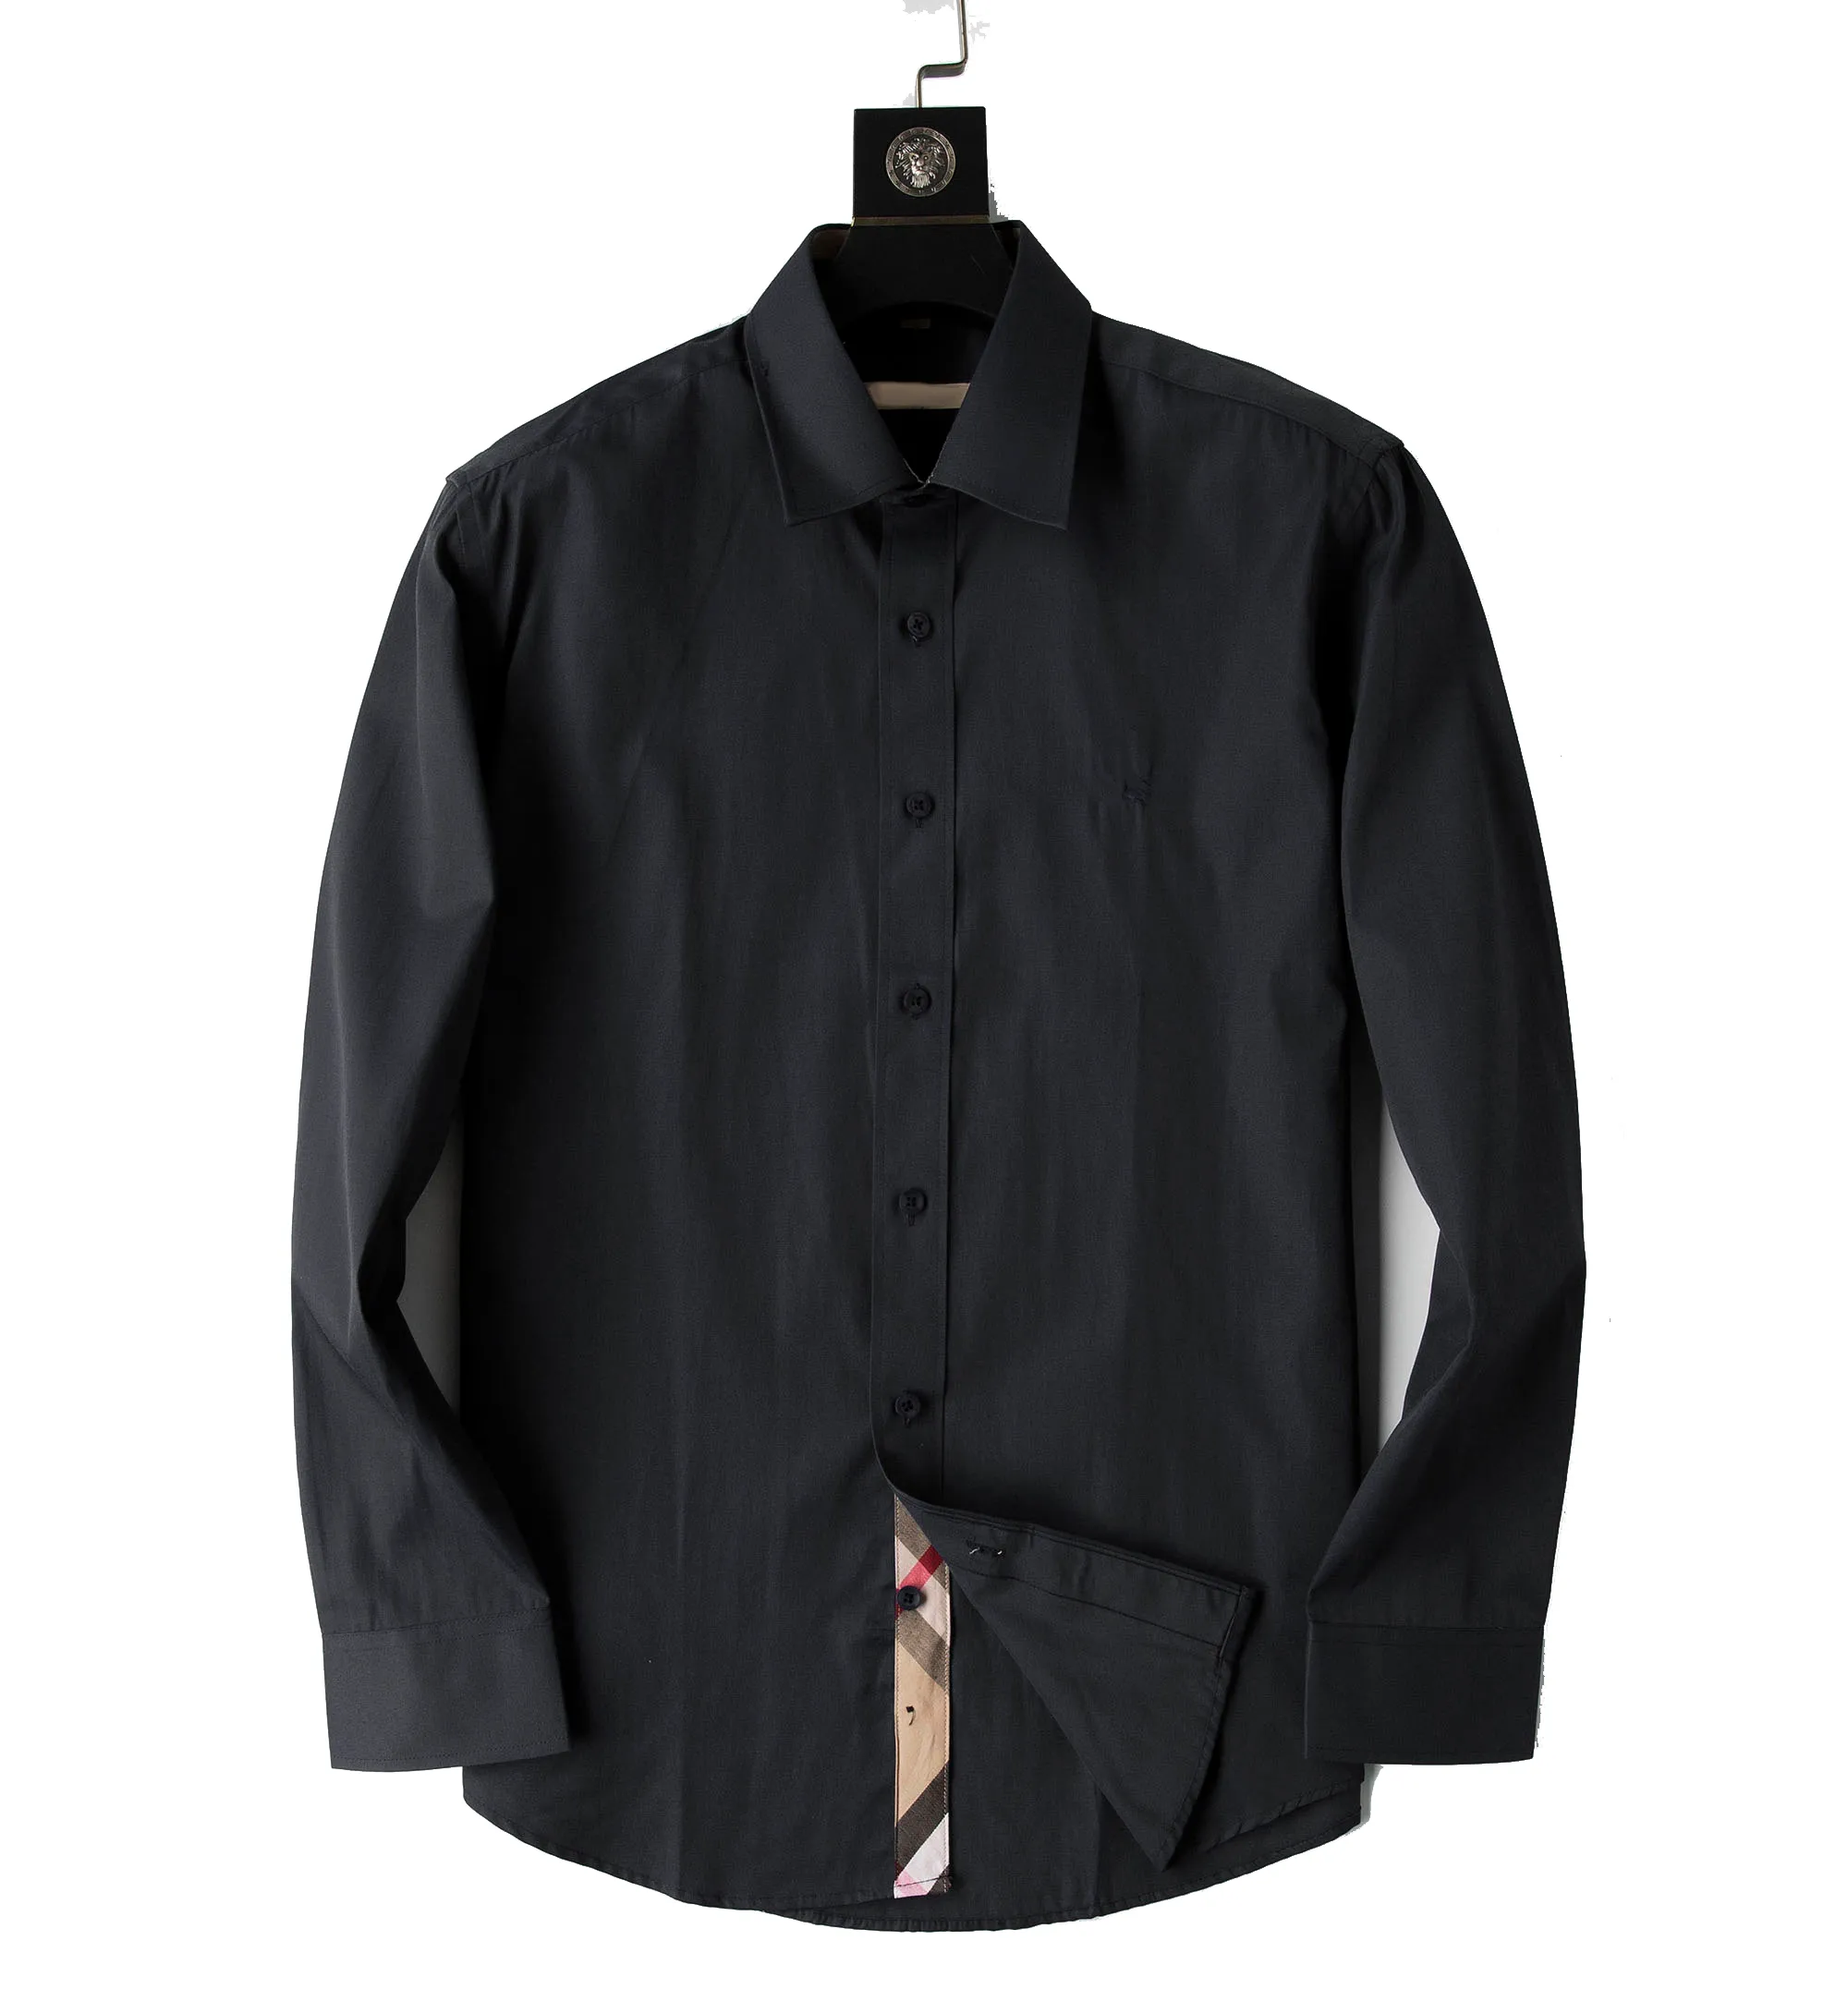 Herrskjorta designers mode menswear casual bussiness skjortor klassisk man klänning skjortor män långärmad mode fjäder m-3xl#01